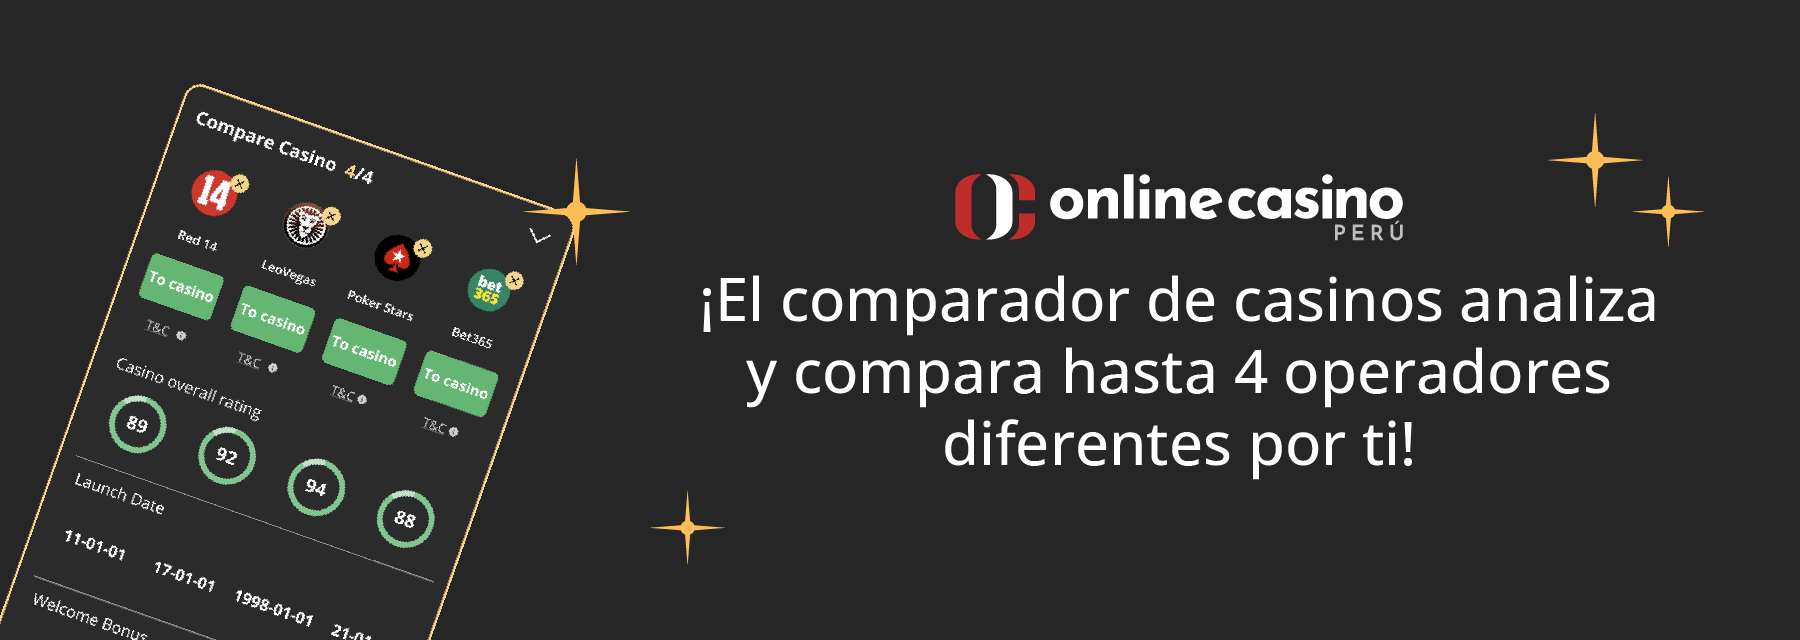 Comparador de casinos online Perú